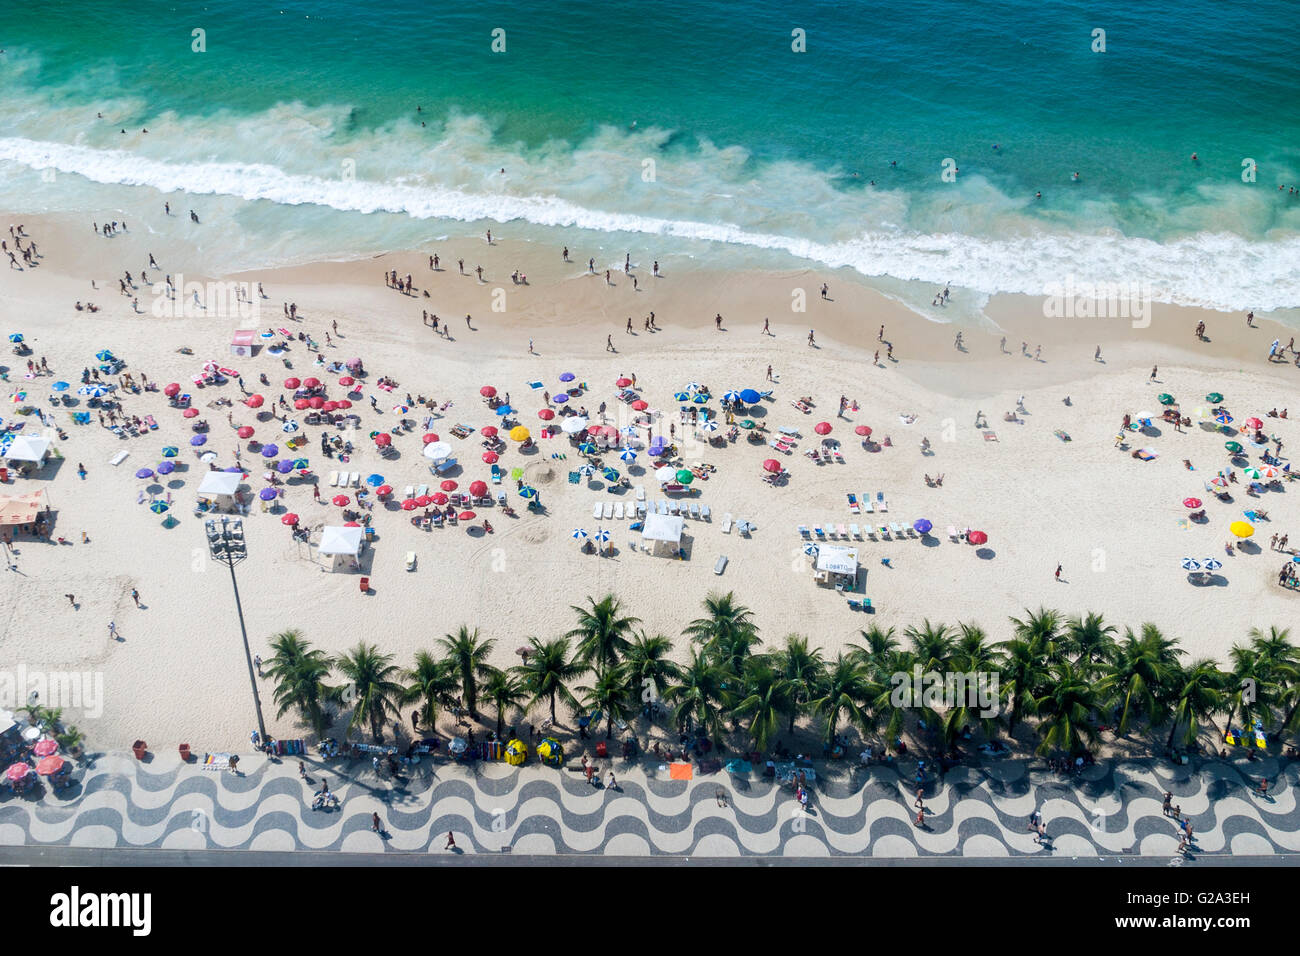 Brésil, Rio de Janeiro, vue de dessus de la plage de Copacabana Banque D'Images